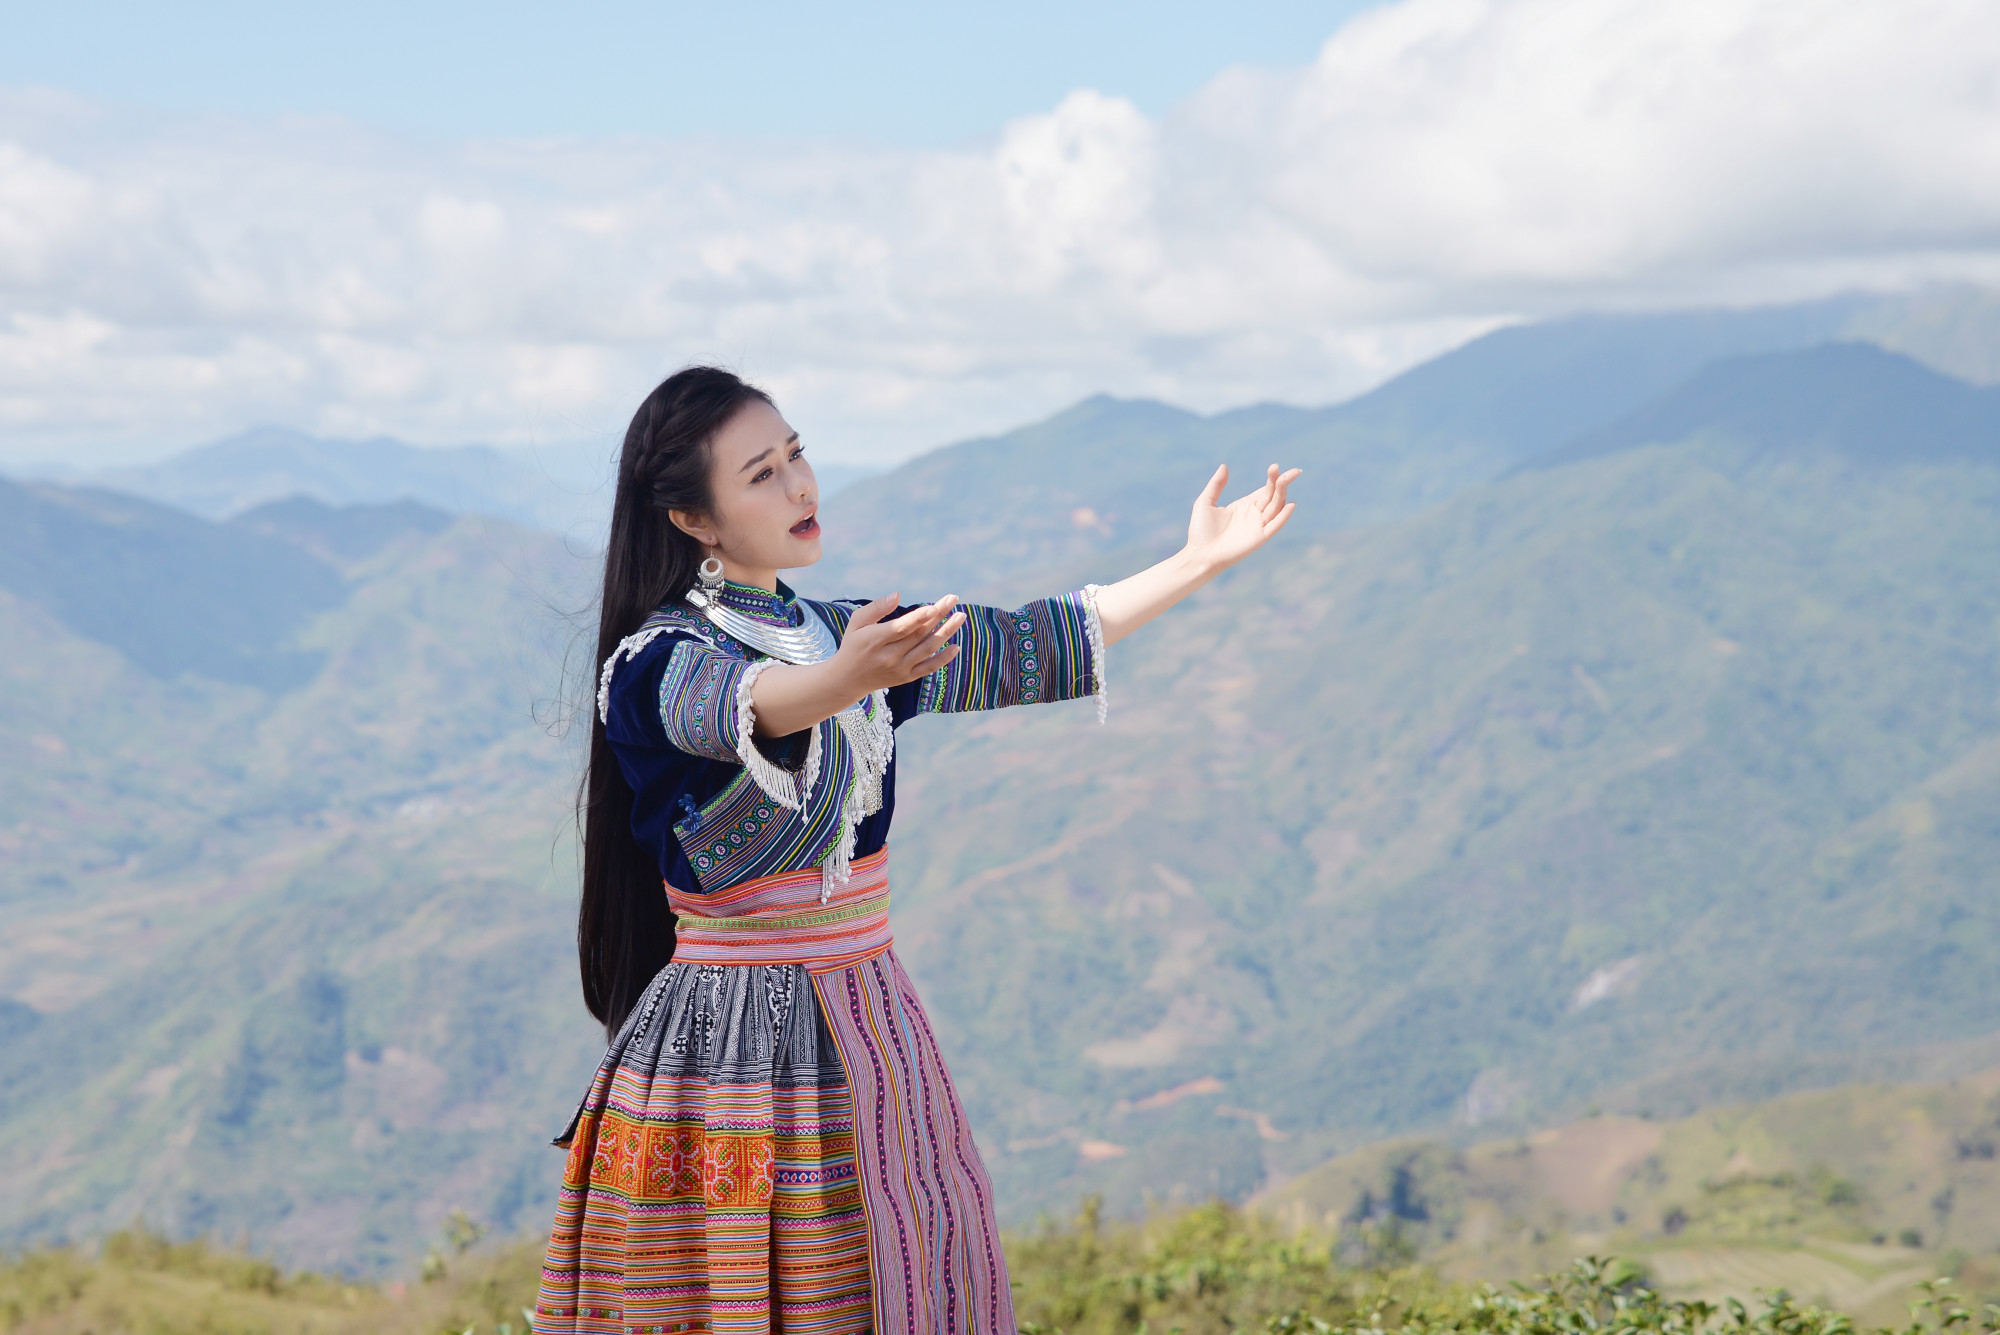 MV “Chắp cánh tương lai” mà Lương Hải Yến ra mắt dịp này không ghi lại chặng đường đã qua của cô, mà ghi nhận một dấu ấn, một hình ảnh khác của Lương Hải Yến bên cạnh sự nghiệp ca hát. 